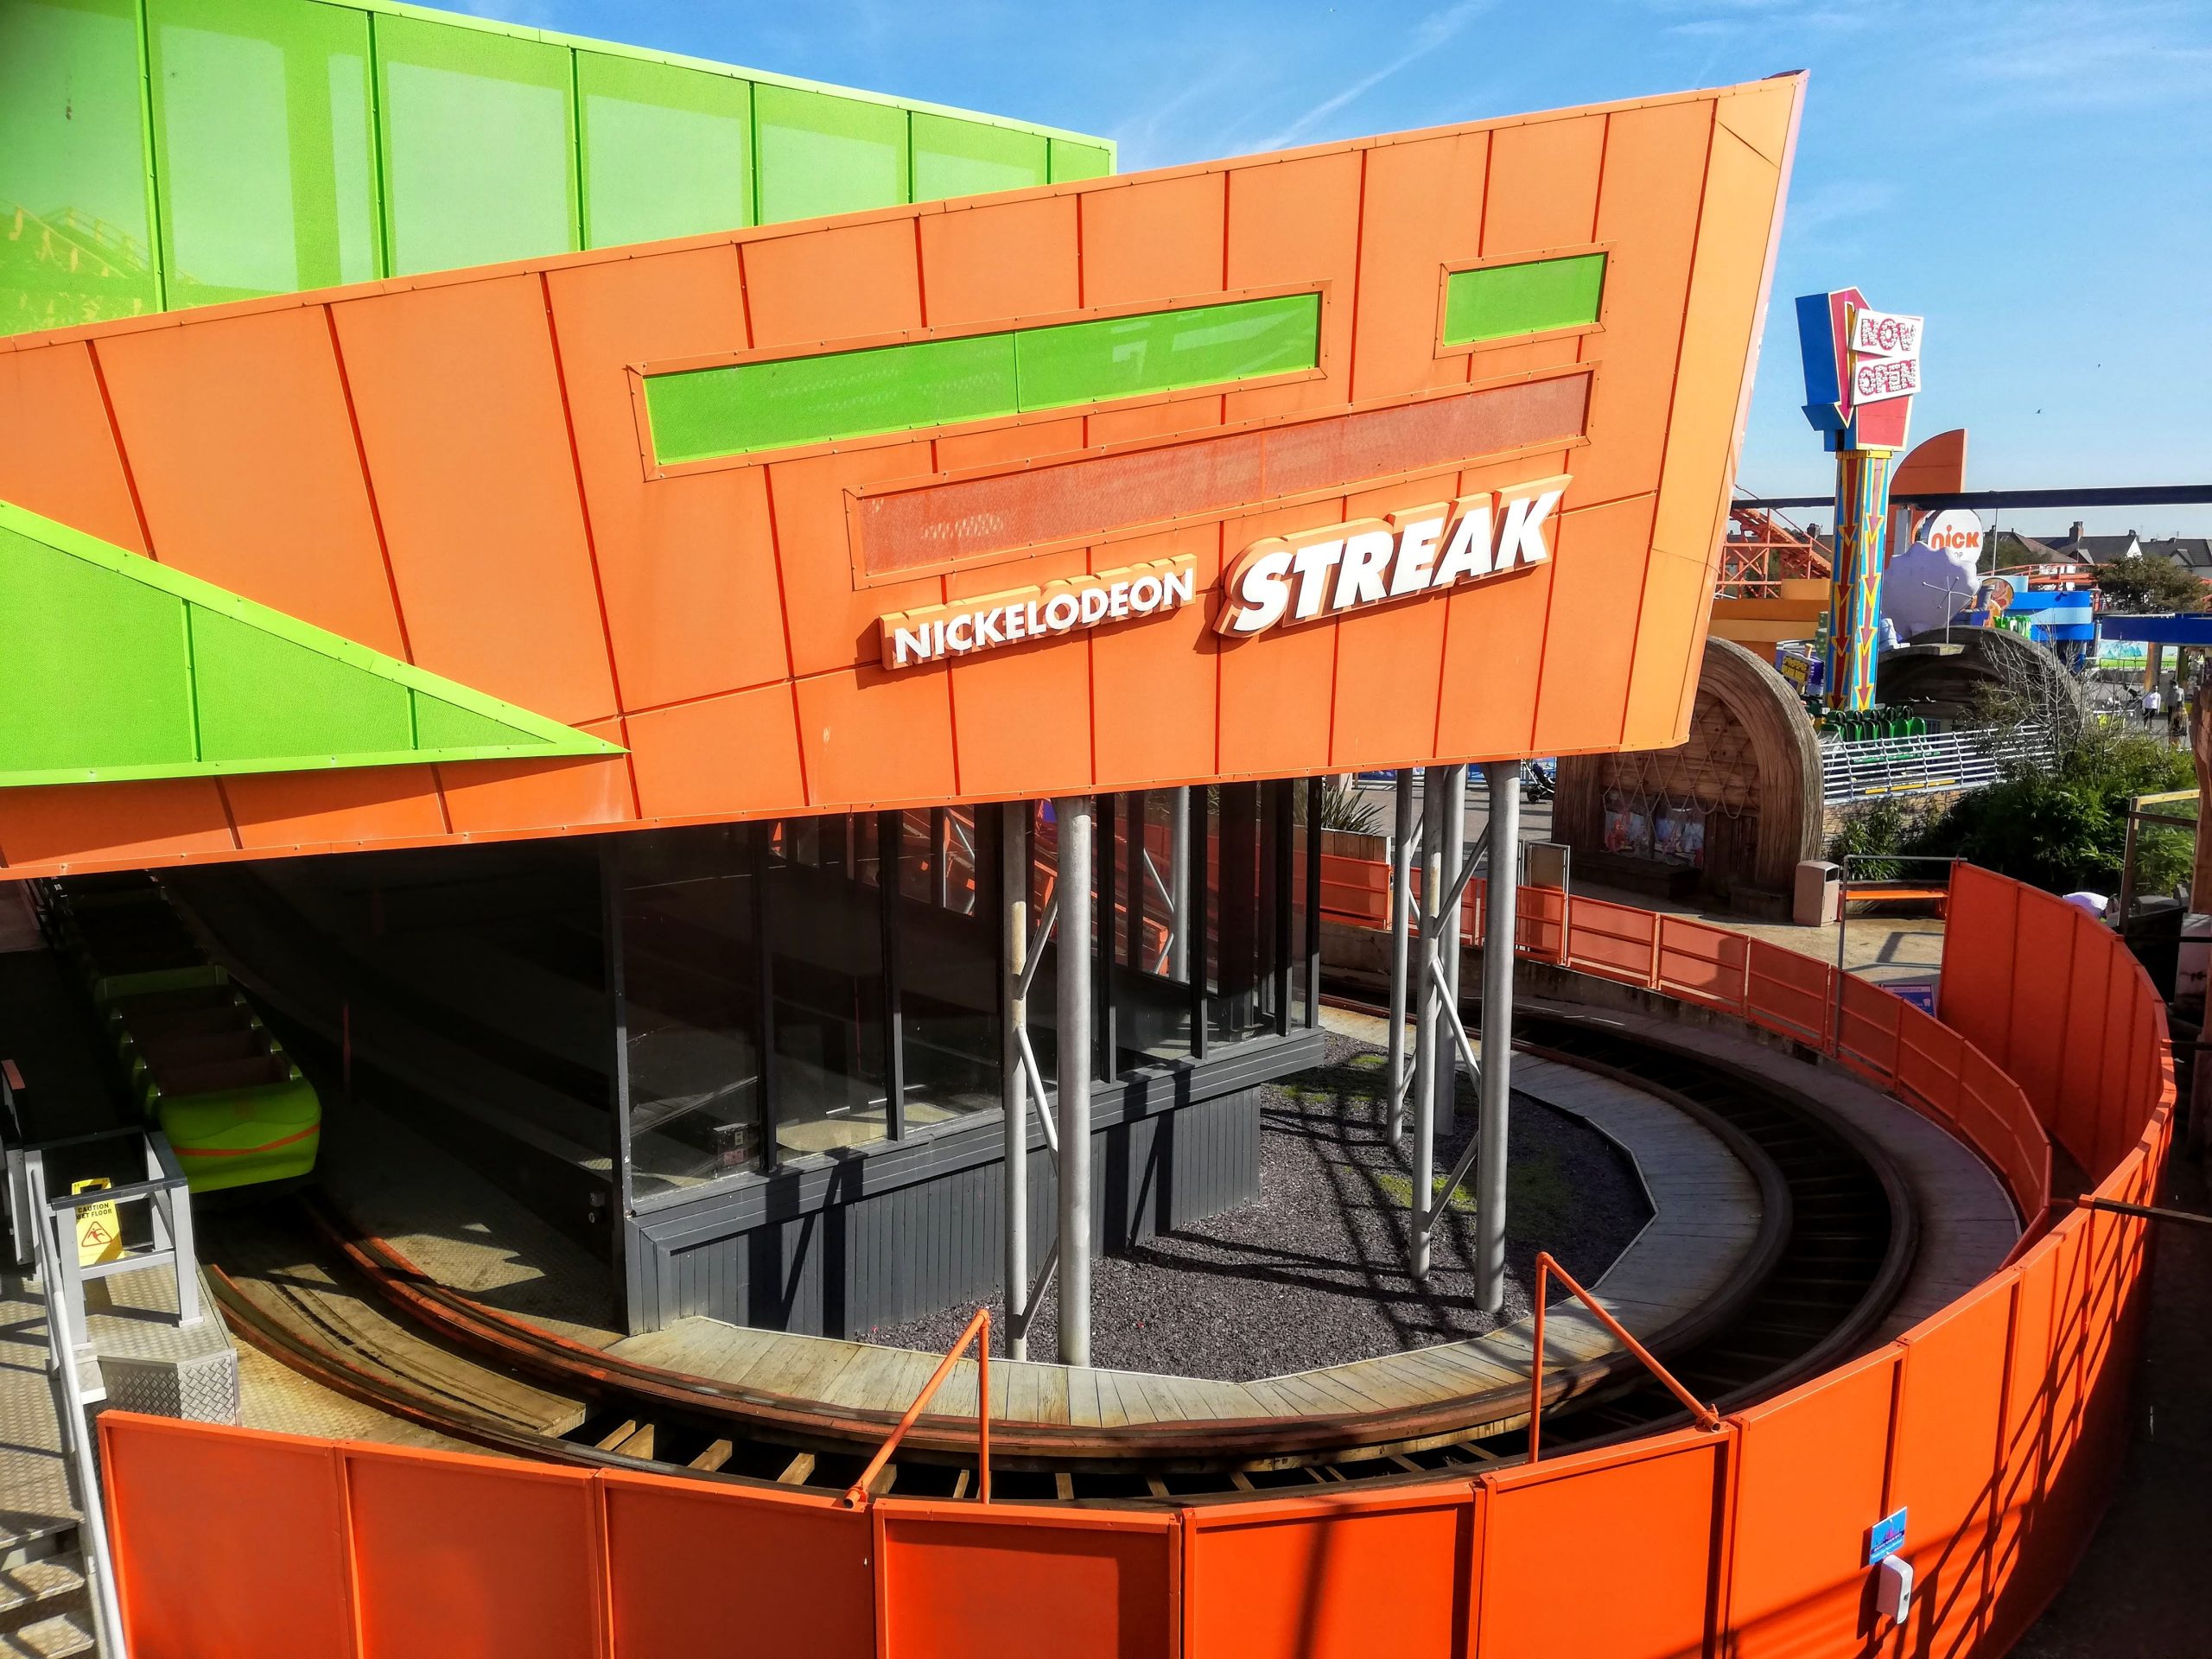 Nickelodeon streak rollercoaster at Blackpool Pleasure Beach